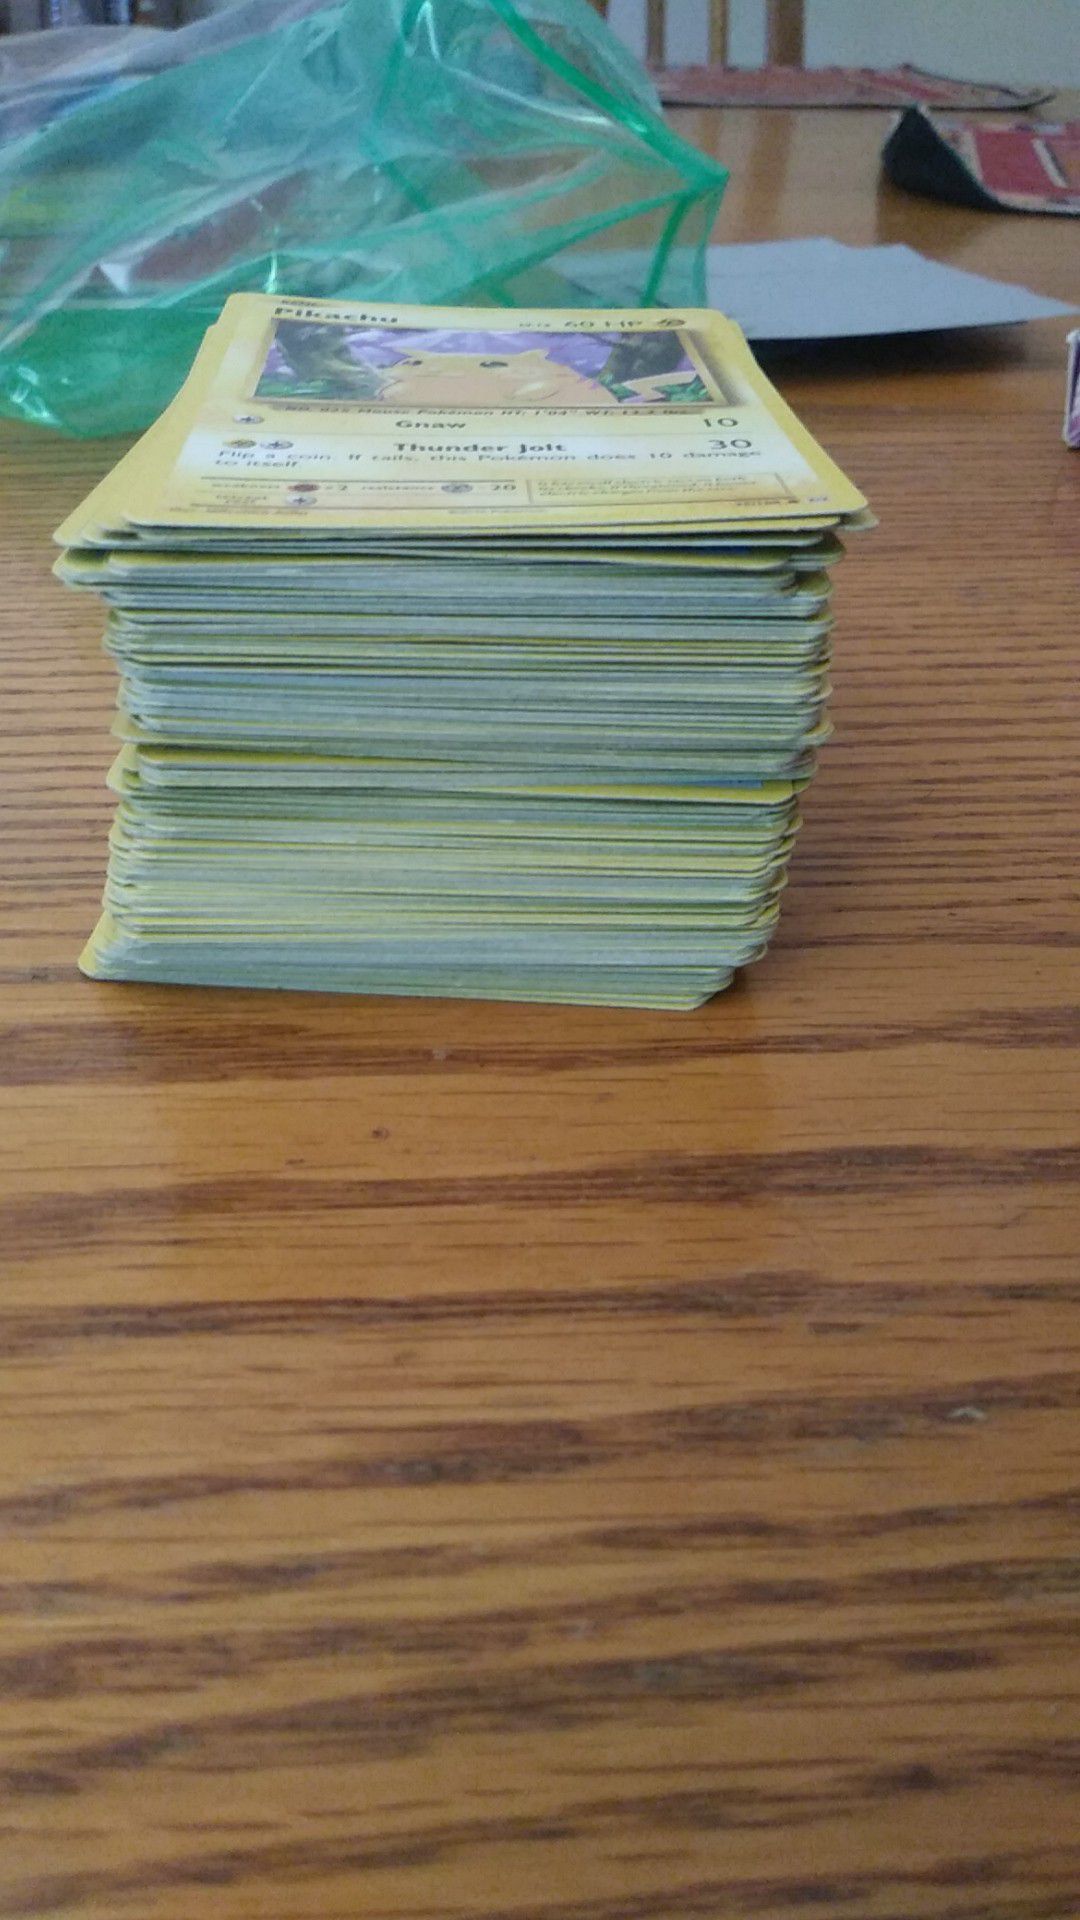 Alot of Basic Pokemon cards